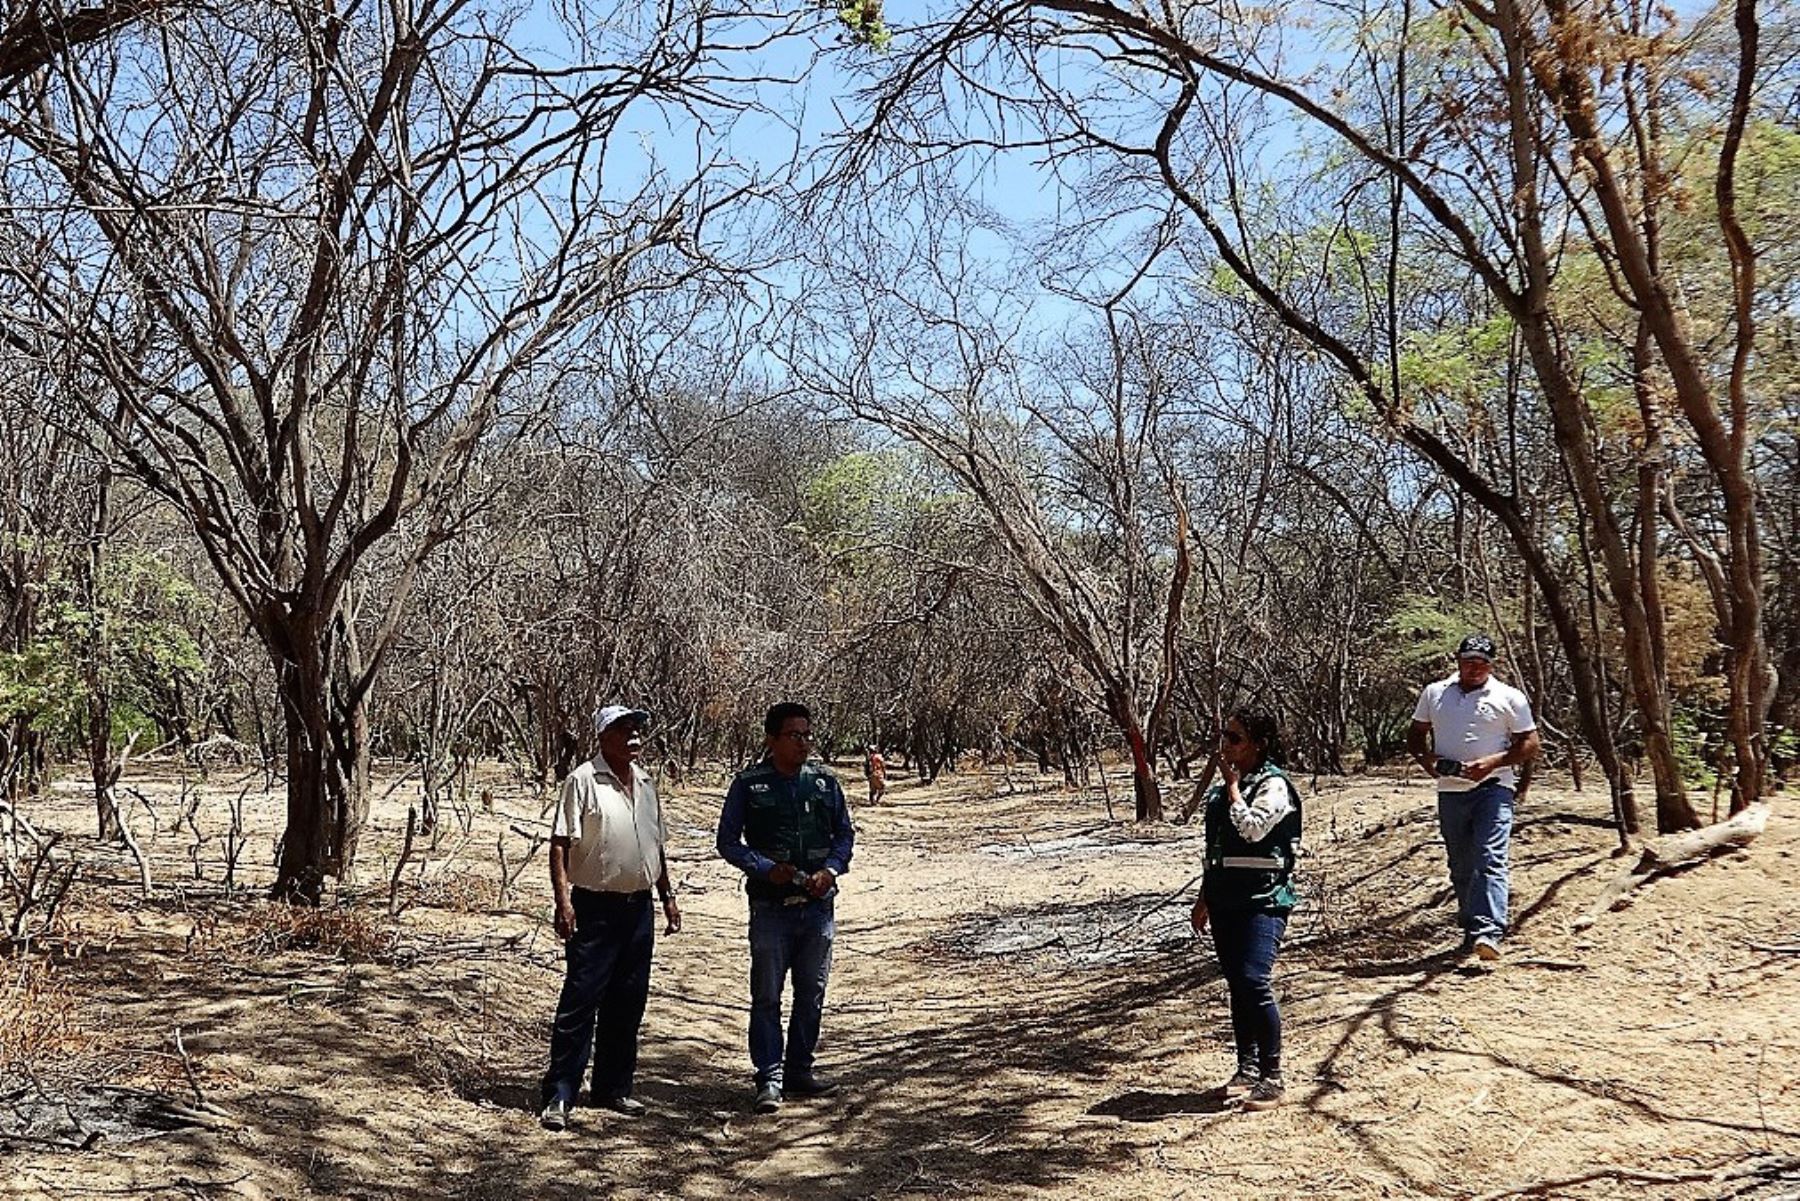 Comunidades campesinas de Piura aprovecharán recursos forestales del bosque seco. Foto: ANDINA.